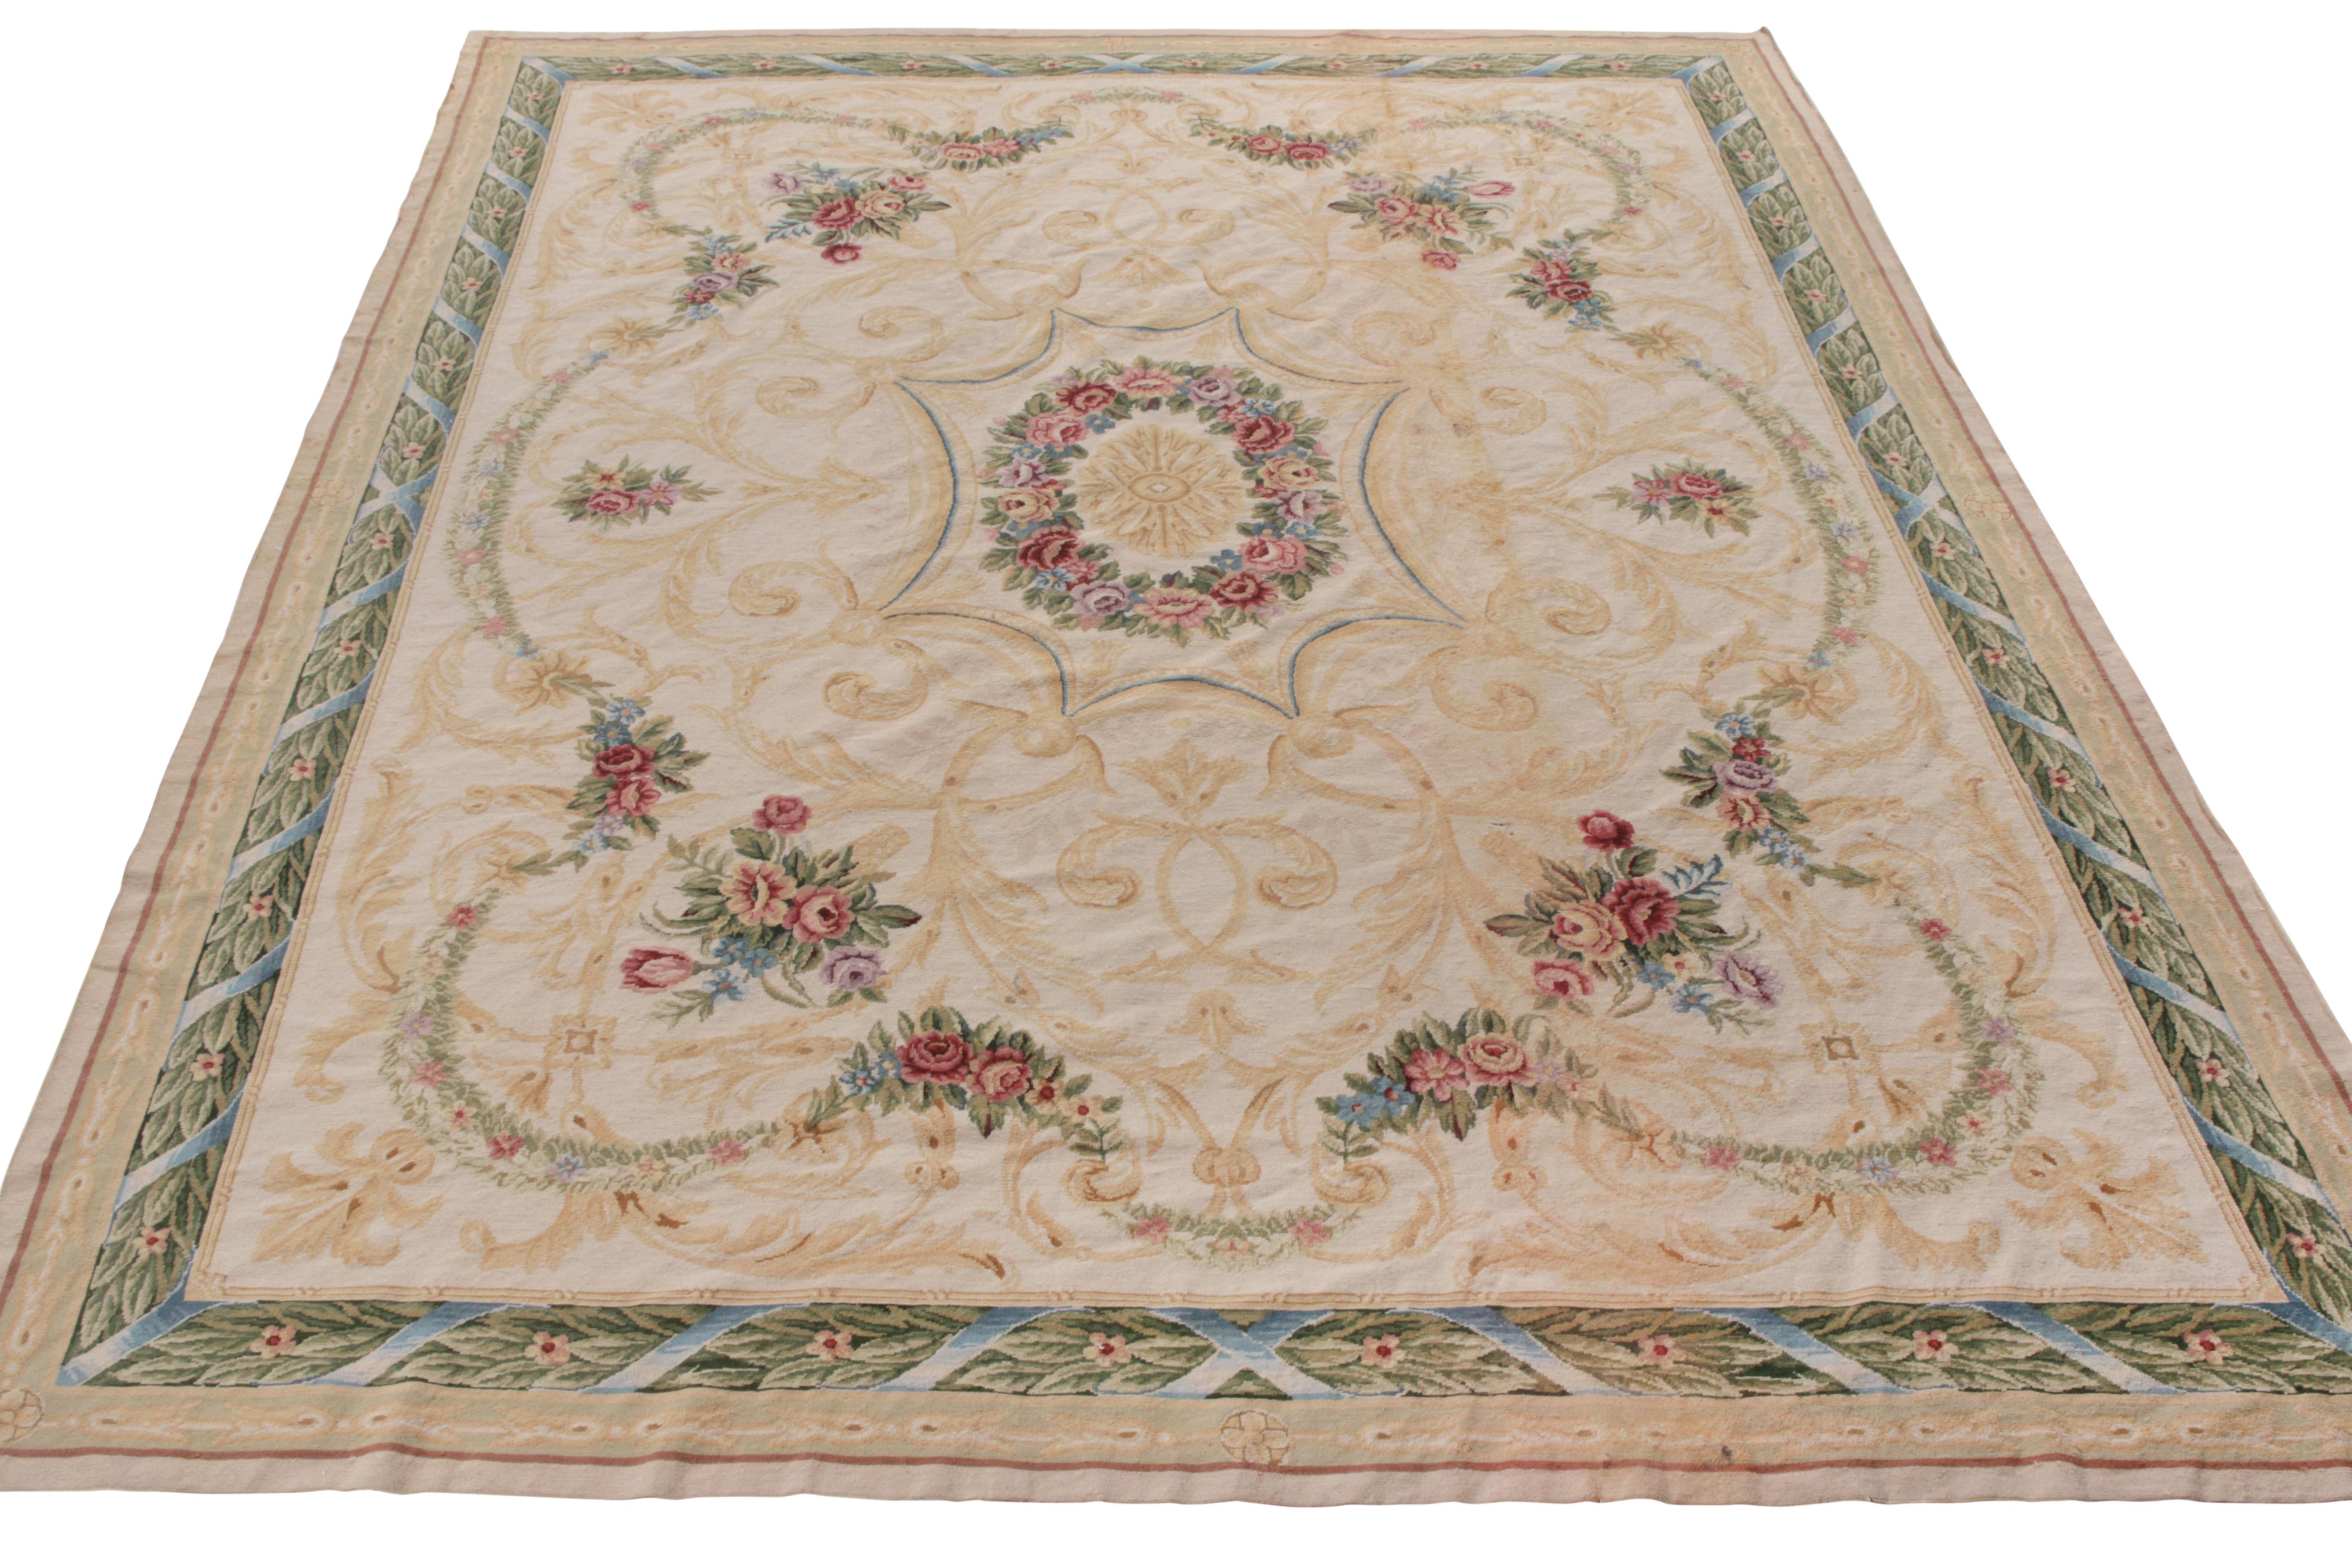 Issu de la collection européenne de Rug & Kilim, ce tapis 9x10 est inspiré du style Aubusson du 18ème siècle. Tissé à la main en laine, le tapis présente un mélange de motifs floraux et de médaillons classiques dans une célèbre gamme de couleurs